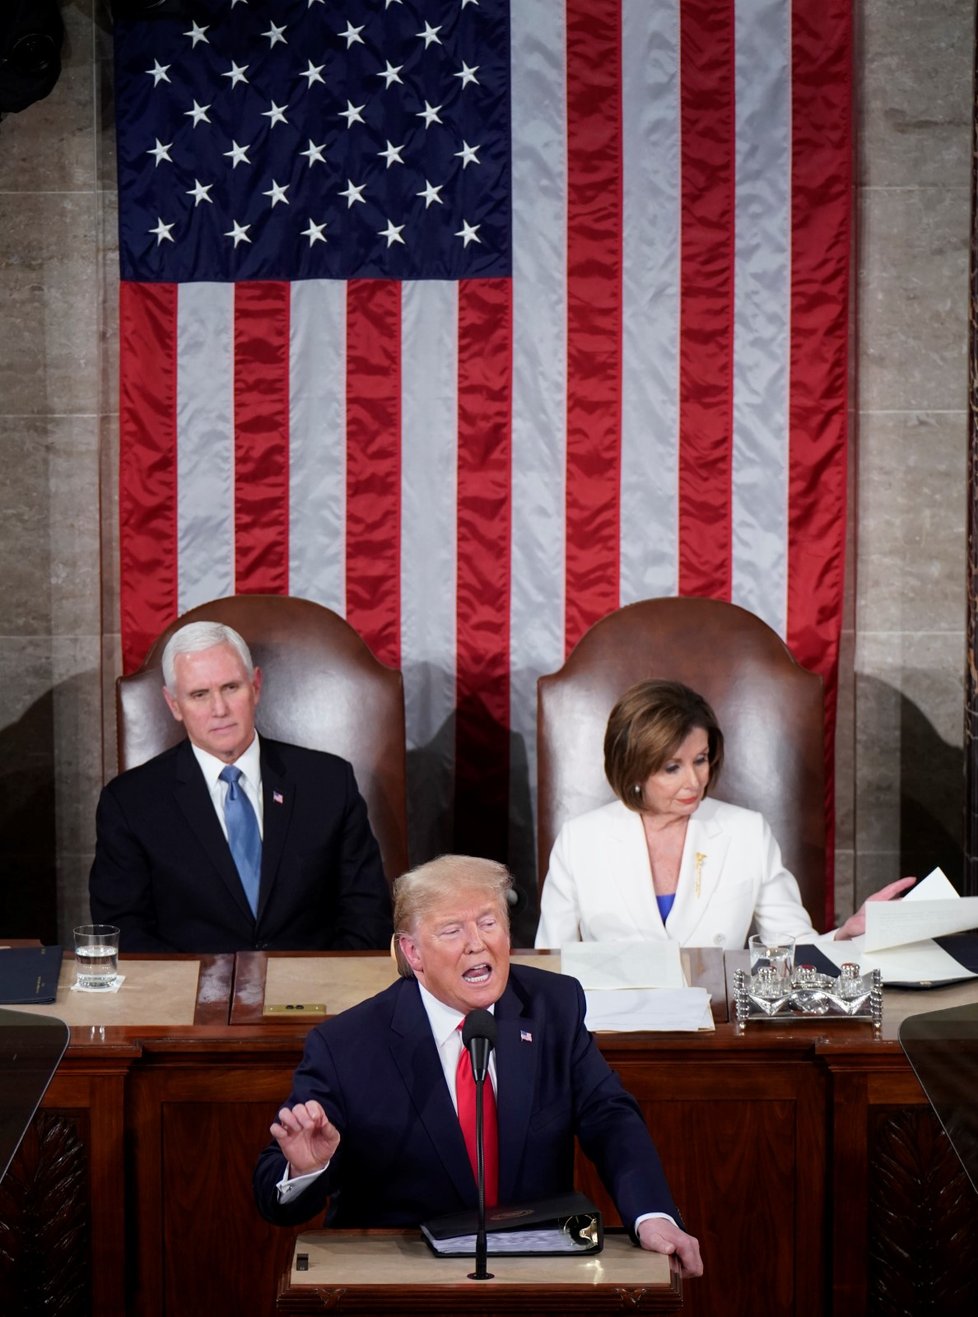 Prezident Donald Trump přednesl projev, šéfka Sněmovny Nancy Pelosiová pak vytištěnou verzi projevu roztrhala (5. 2. 2020)